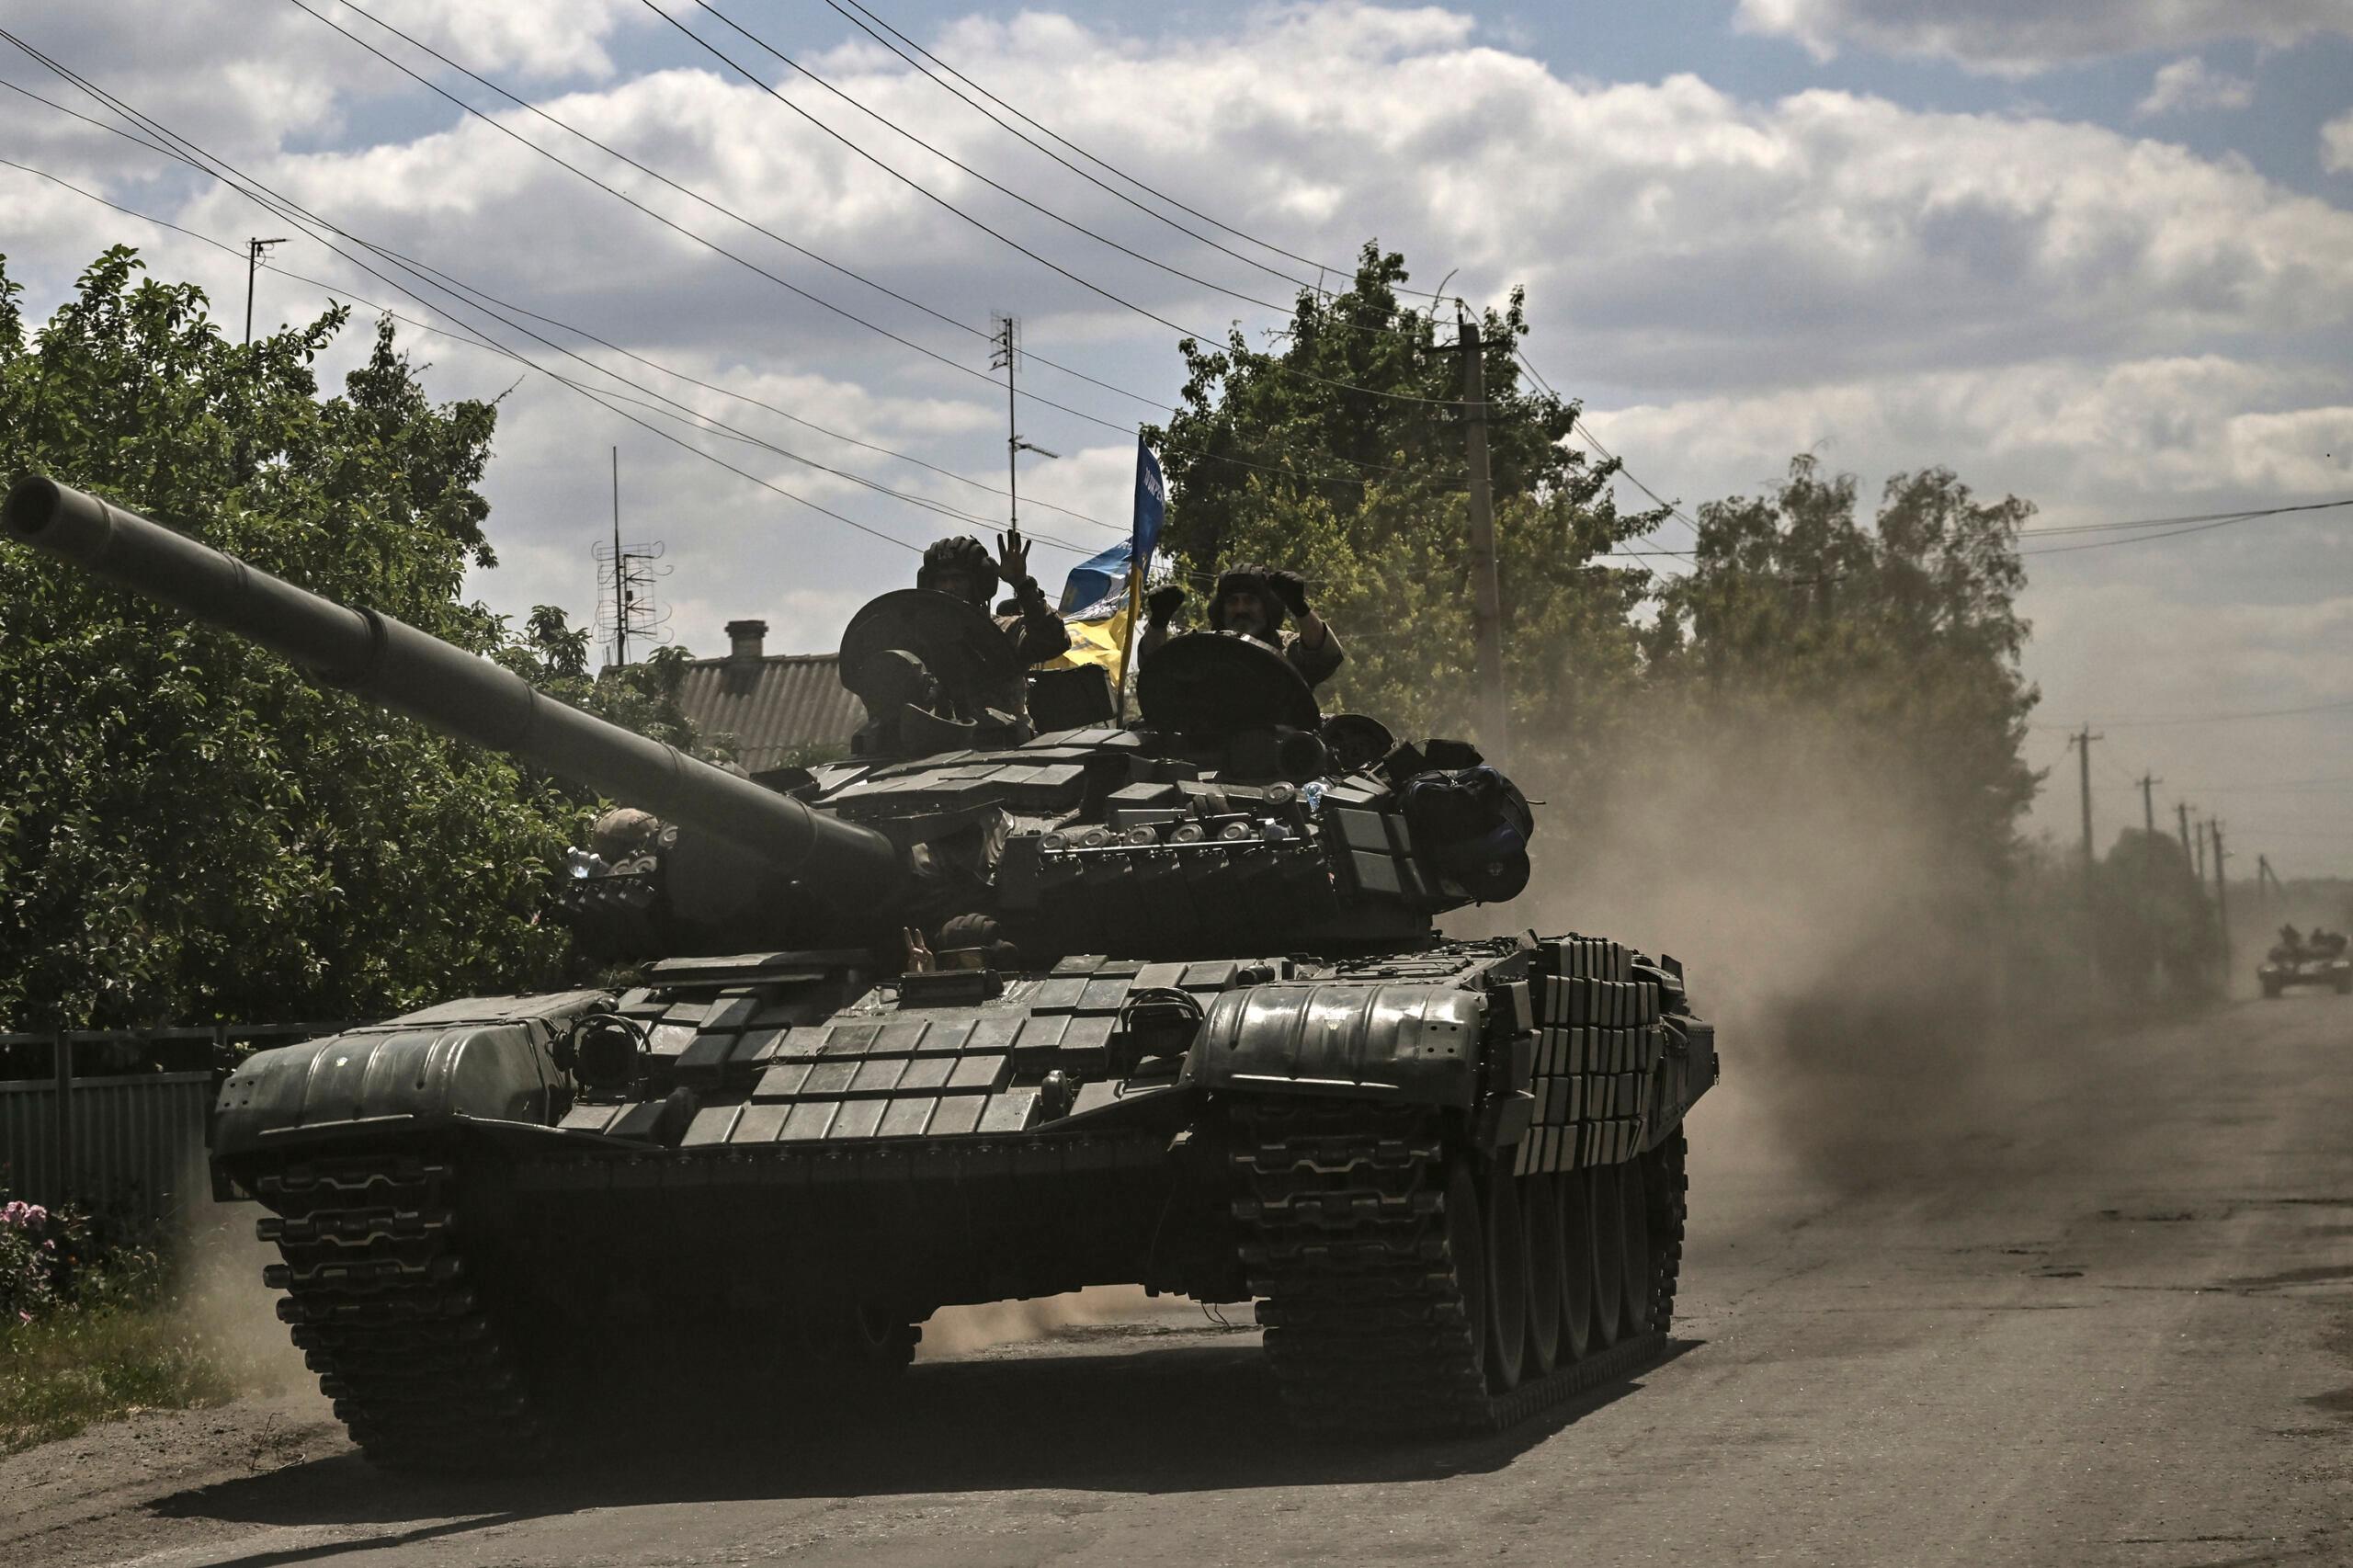 Ukraińscy żołnierze zmierzają w kierunku linii frontu z czołgiem MBT (Main Battle Tank) we wschodniej części Ukrainy, w regionie Donbas, 7 czerwca 2022 r.